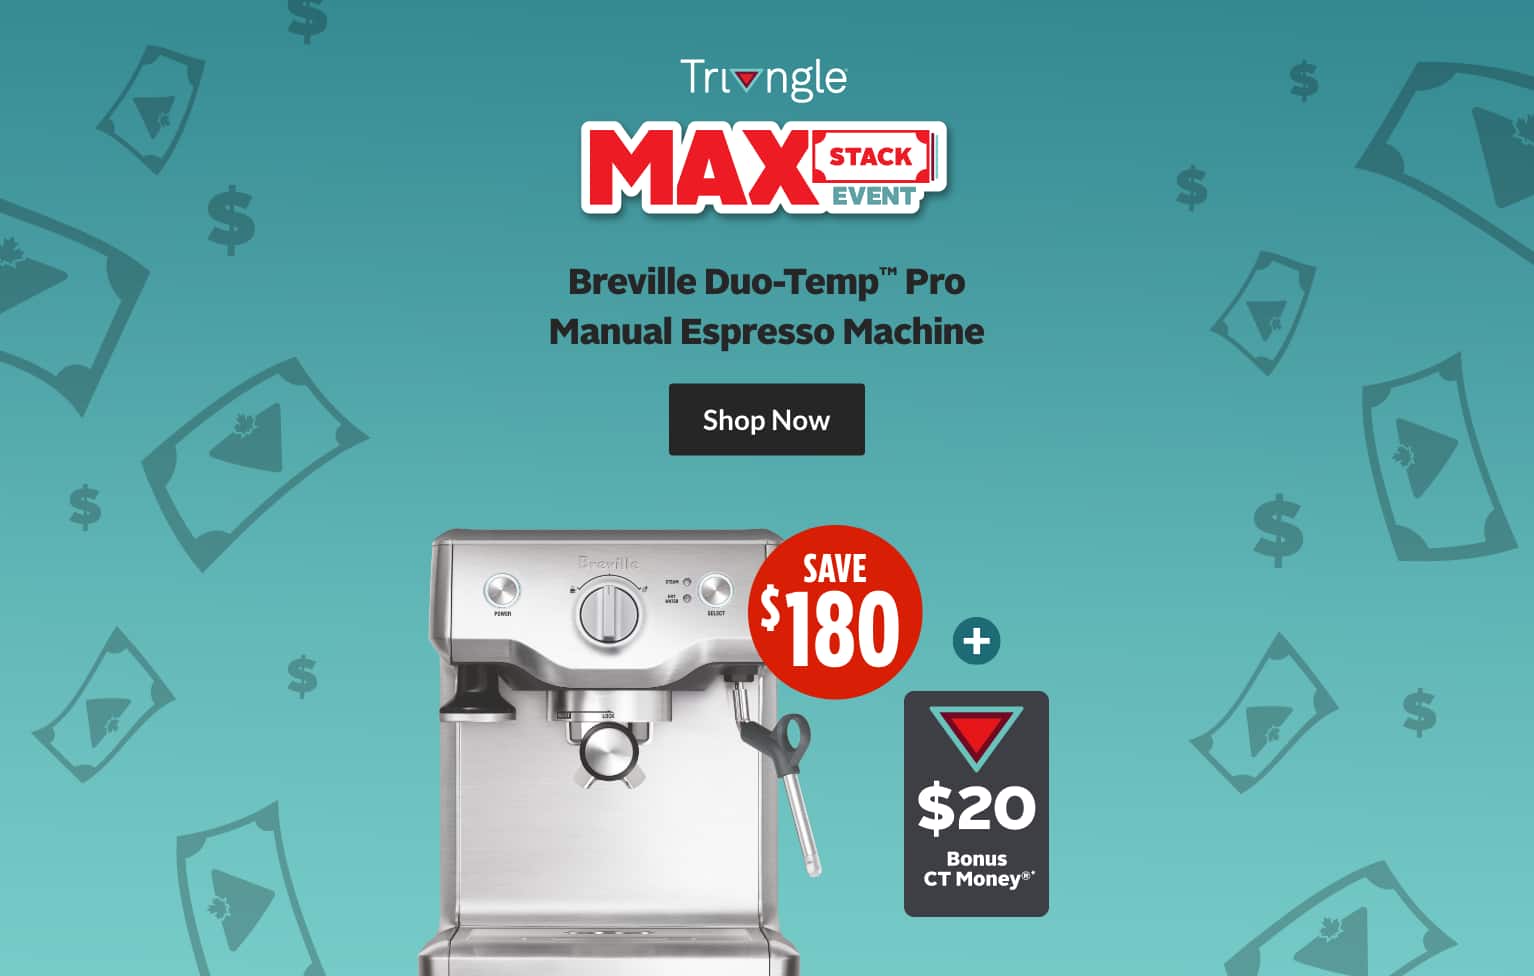 Breville Duo-Temp Pro Manual Espresso Machine 